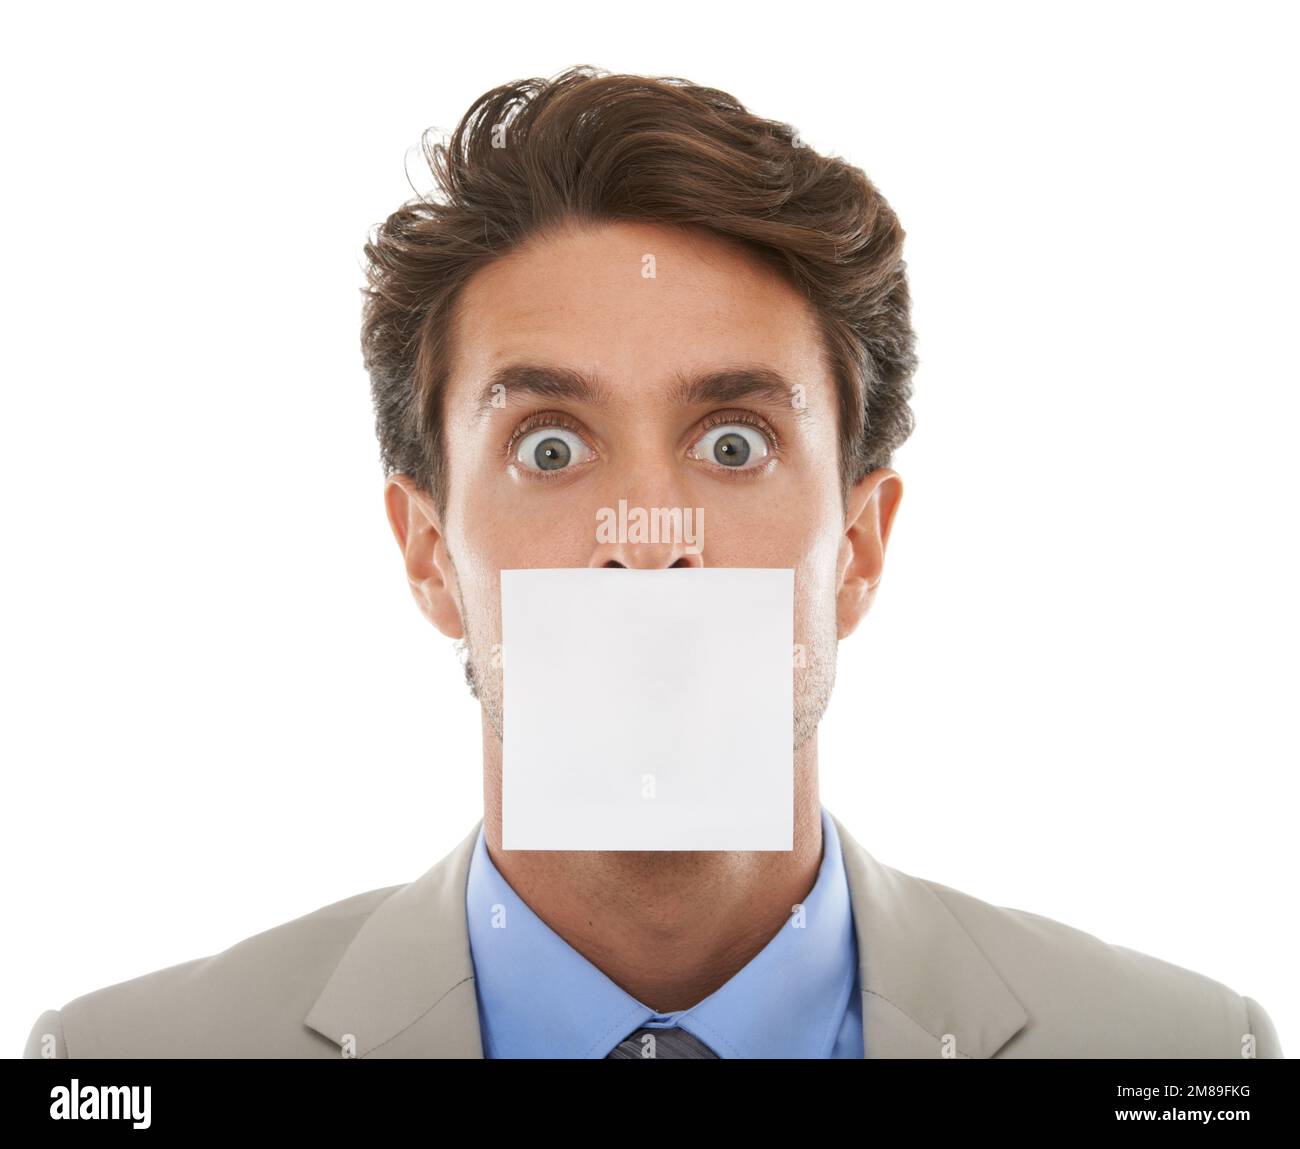 Gagging aziendale. Concept studio ritratto di un giovane uomo d'affari con una nota appiccicosa sopra la bocca isolato su bianco. Foto Stock